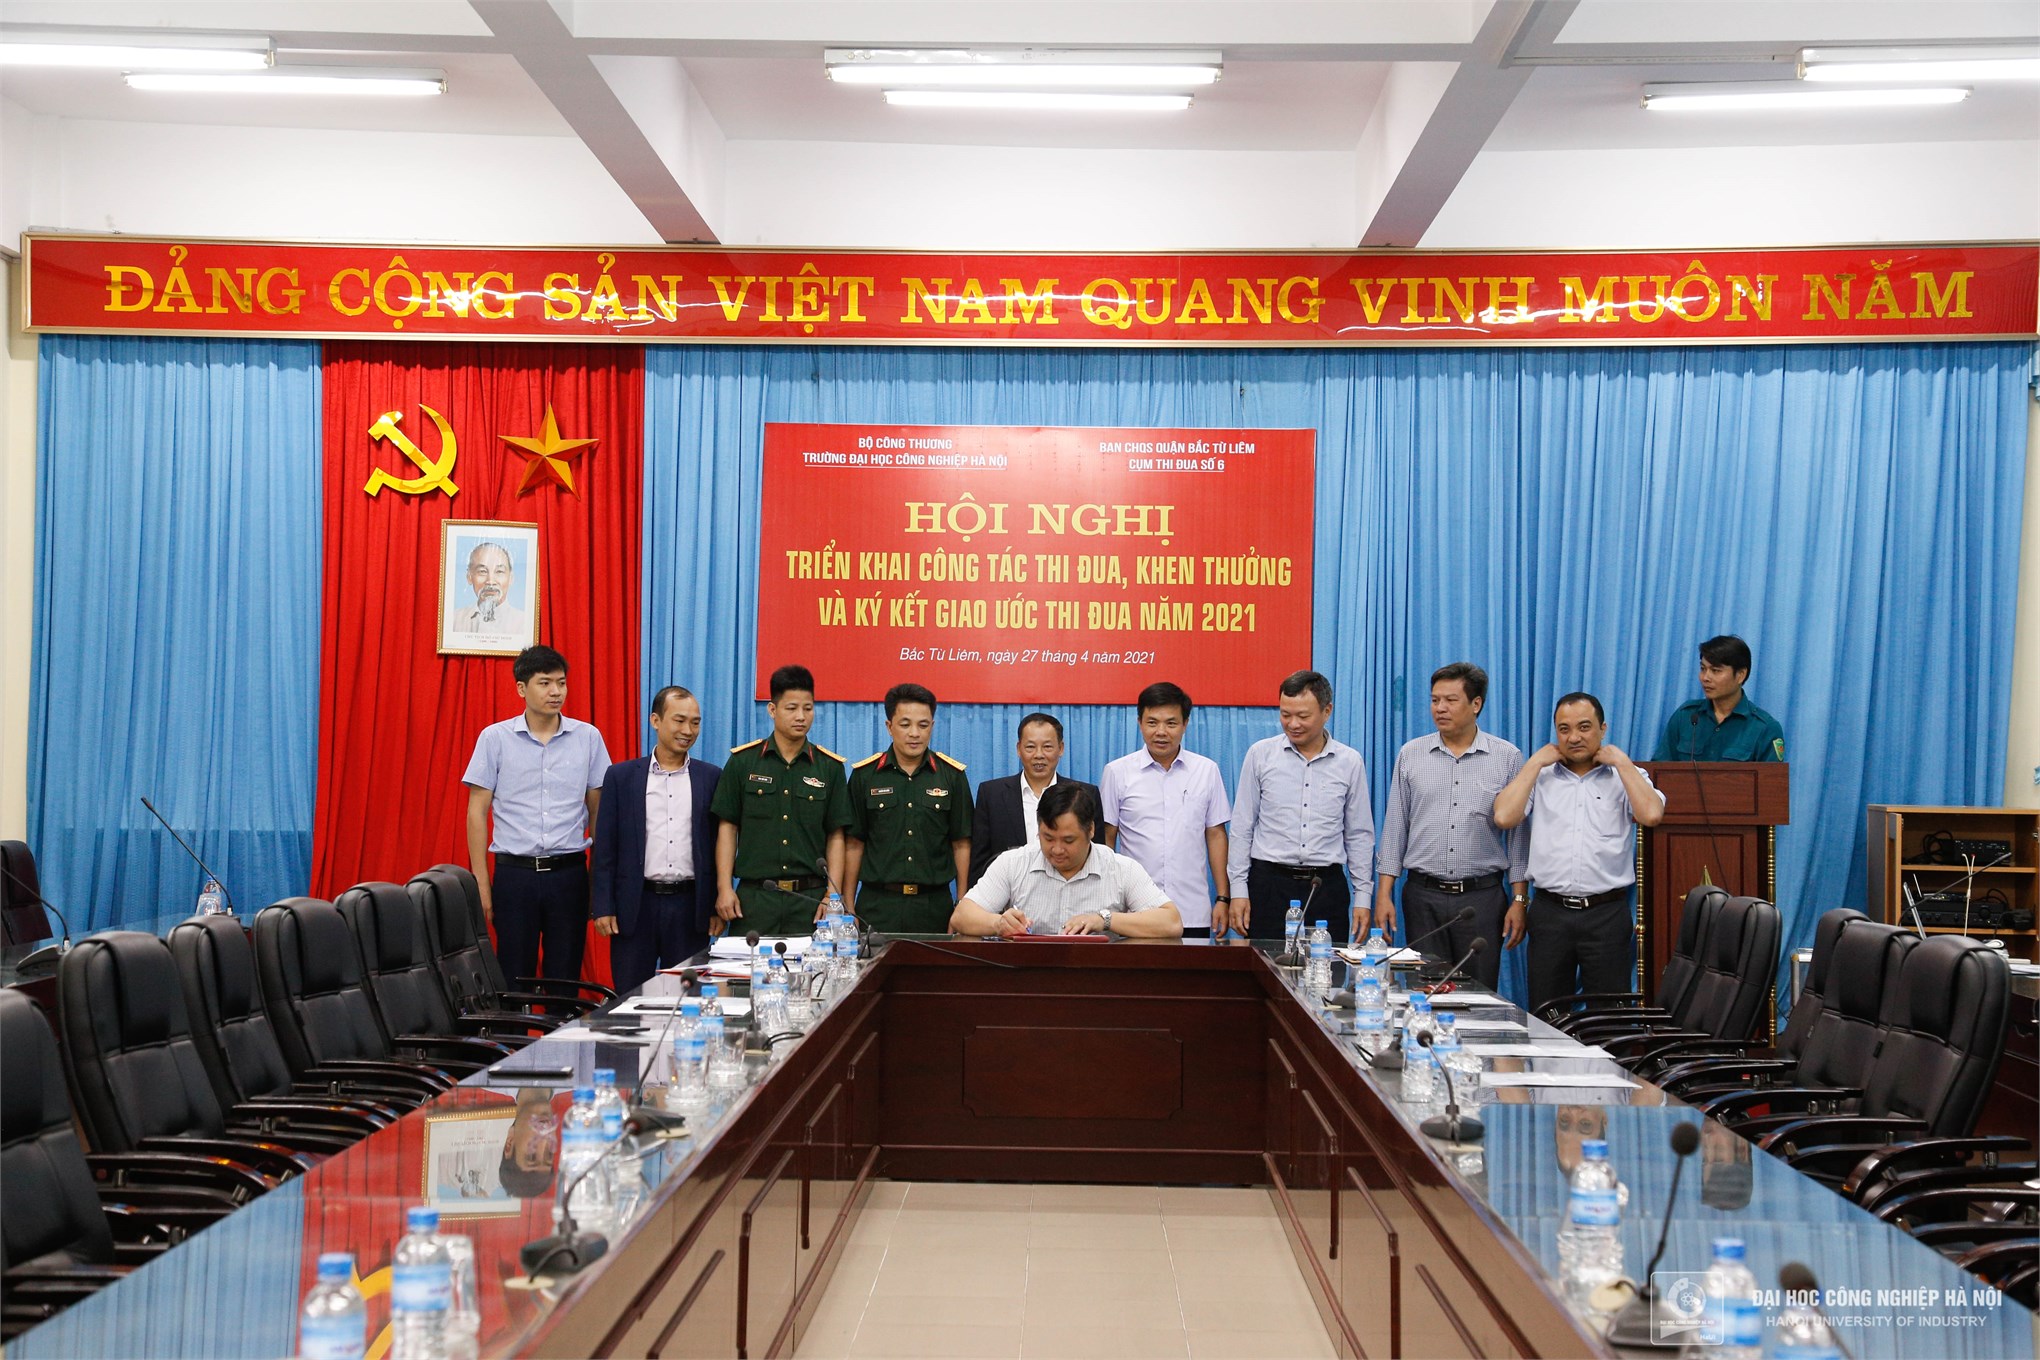 Đại học Công nghiệp Hà Nội ký kết giao ước thi đua của Cụm thi đua số 6 năm 2021